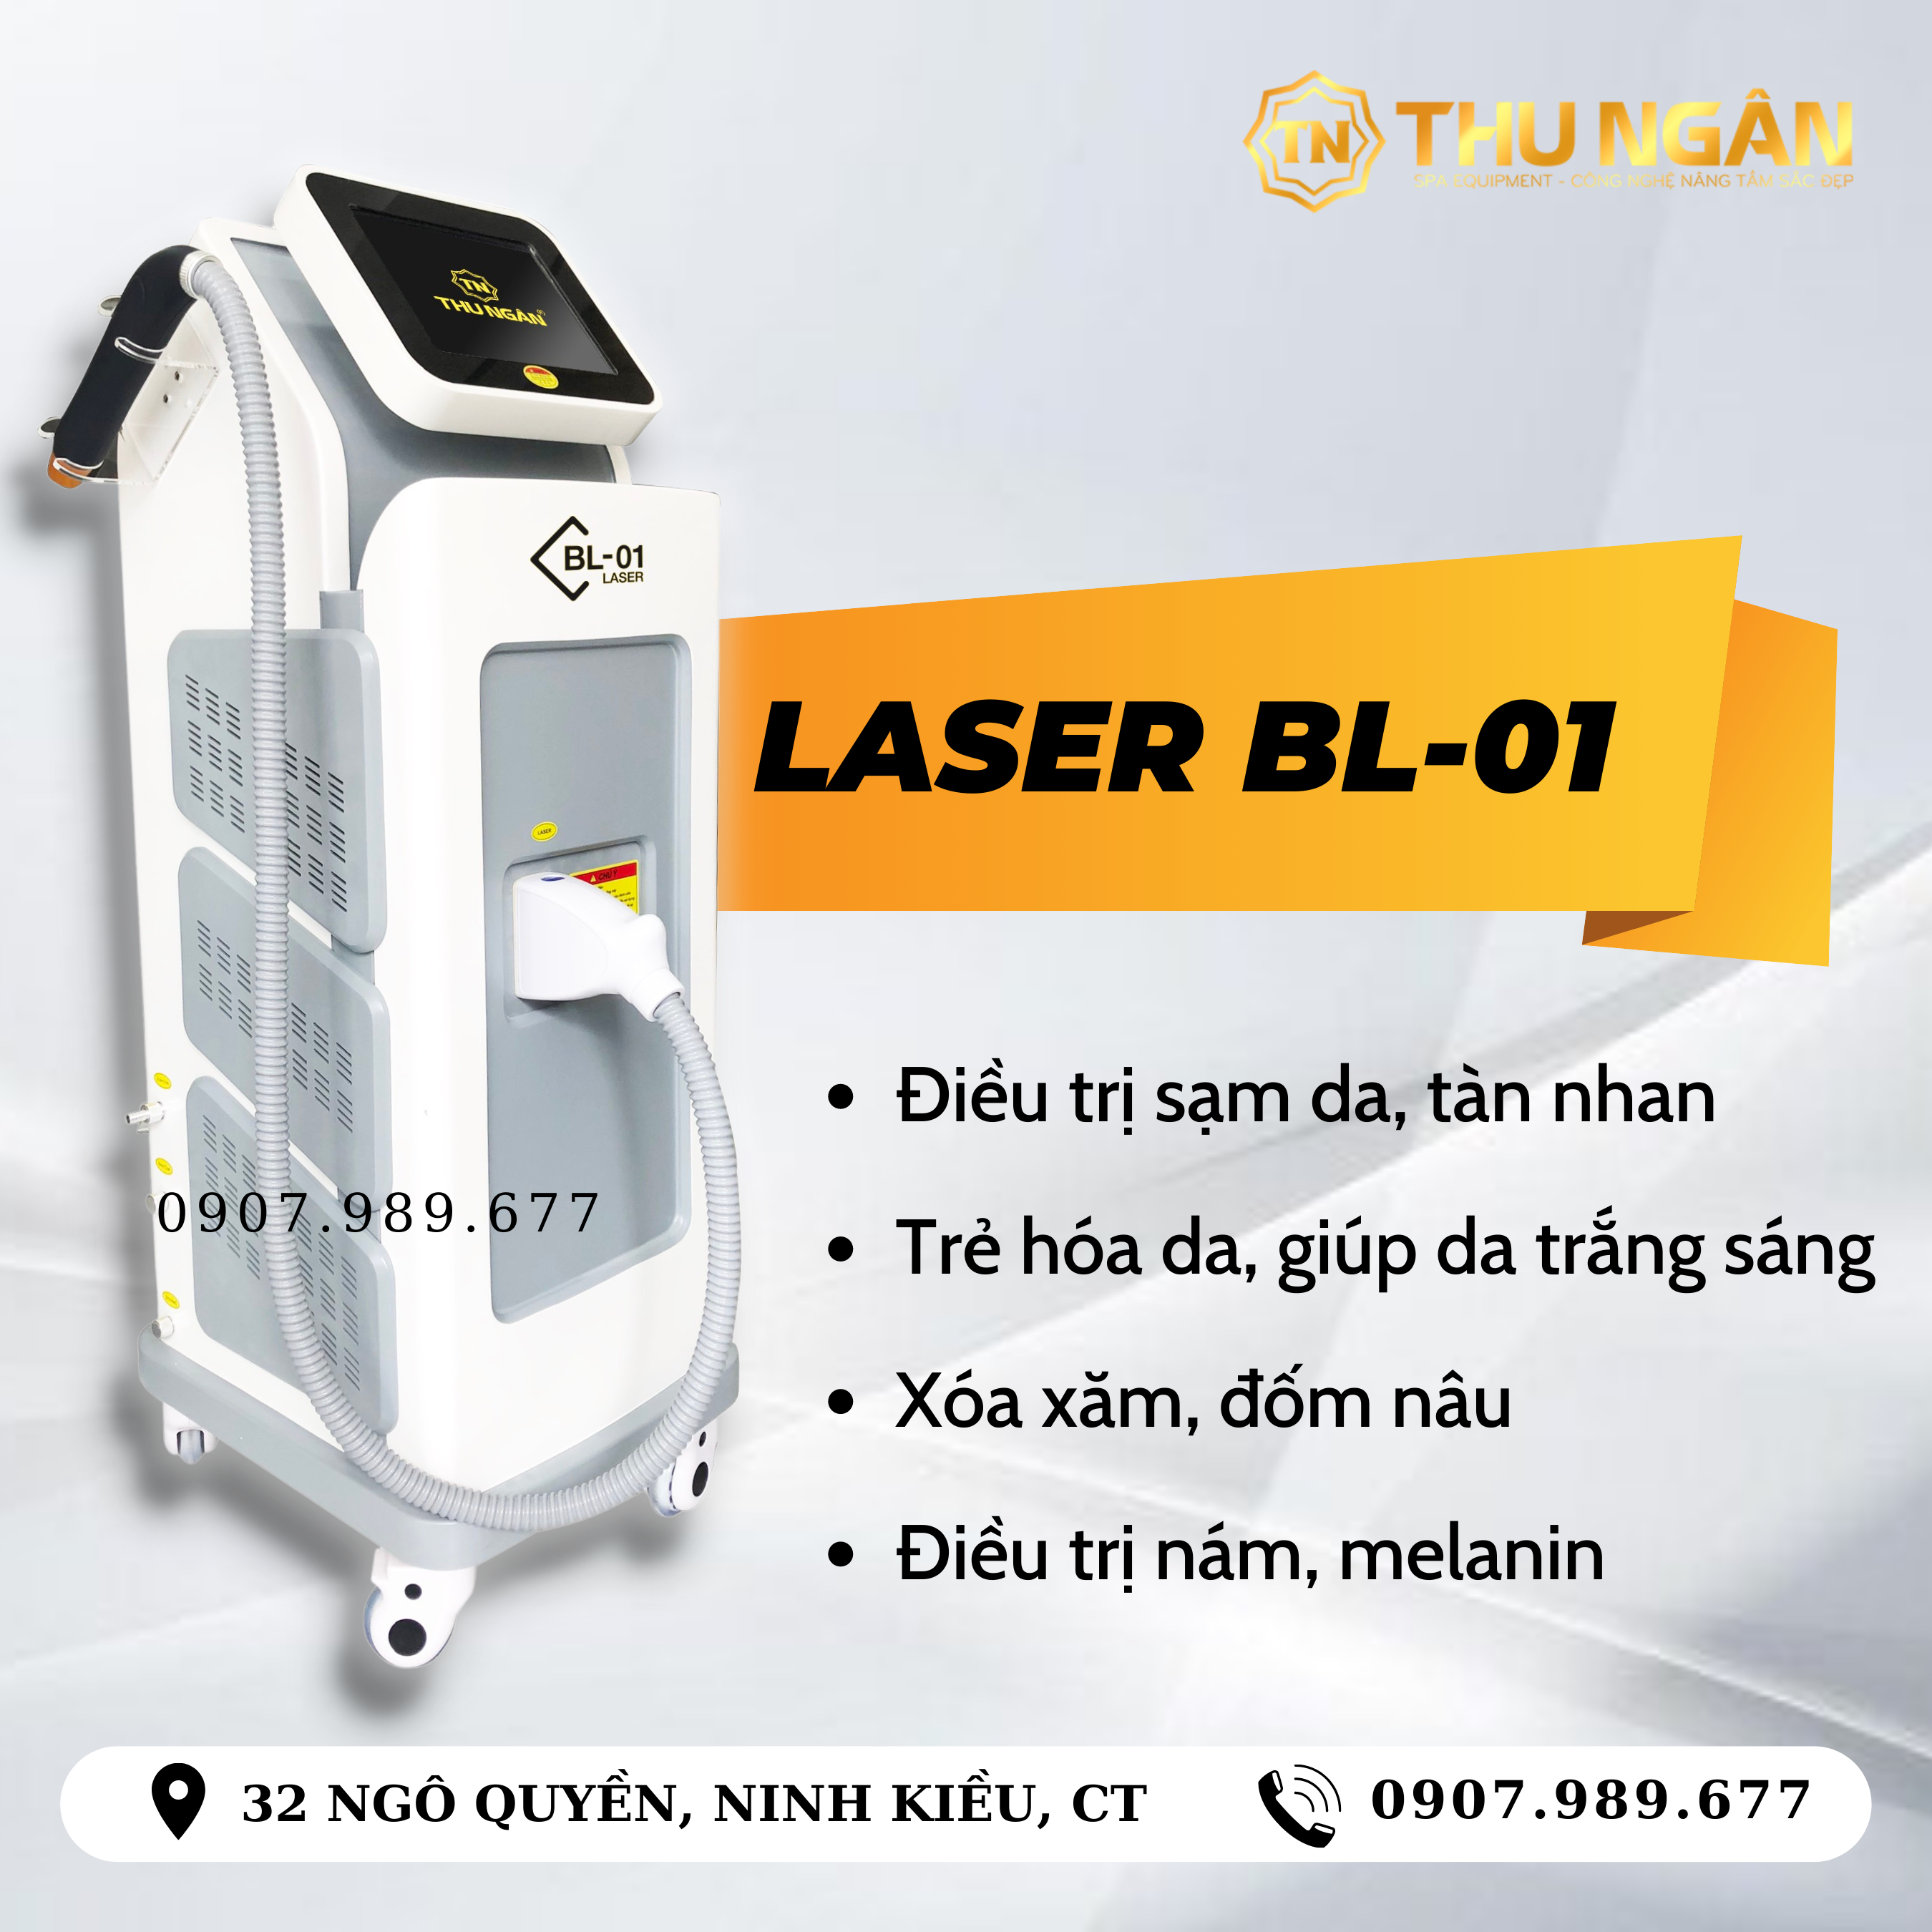 laser bl 01